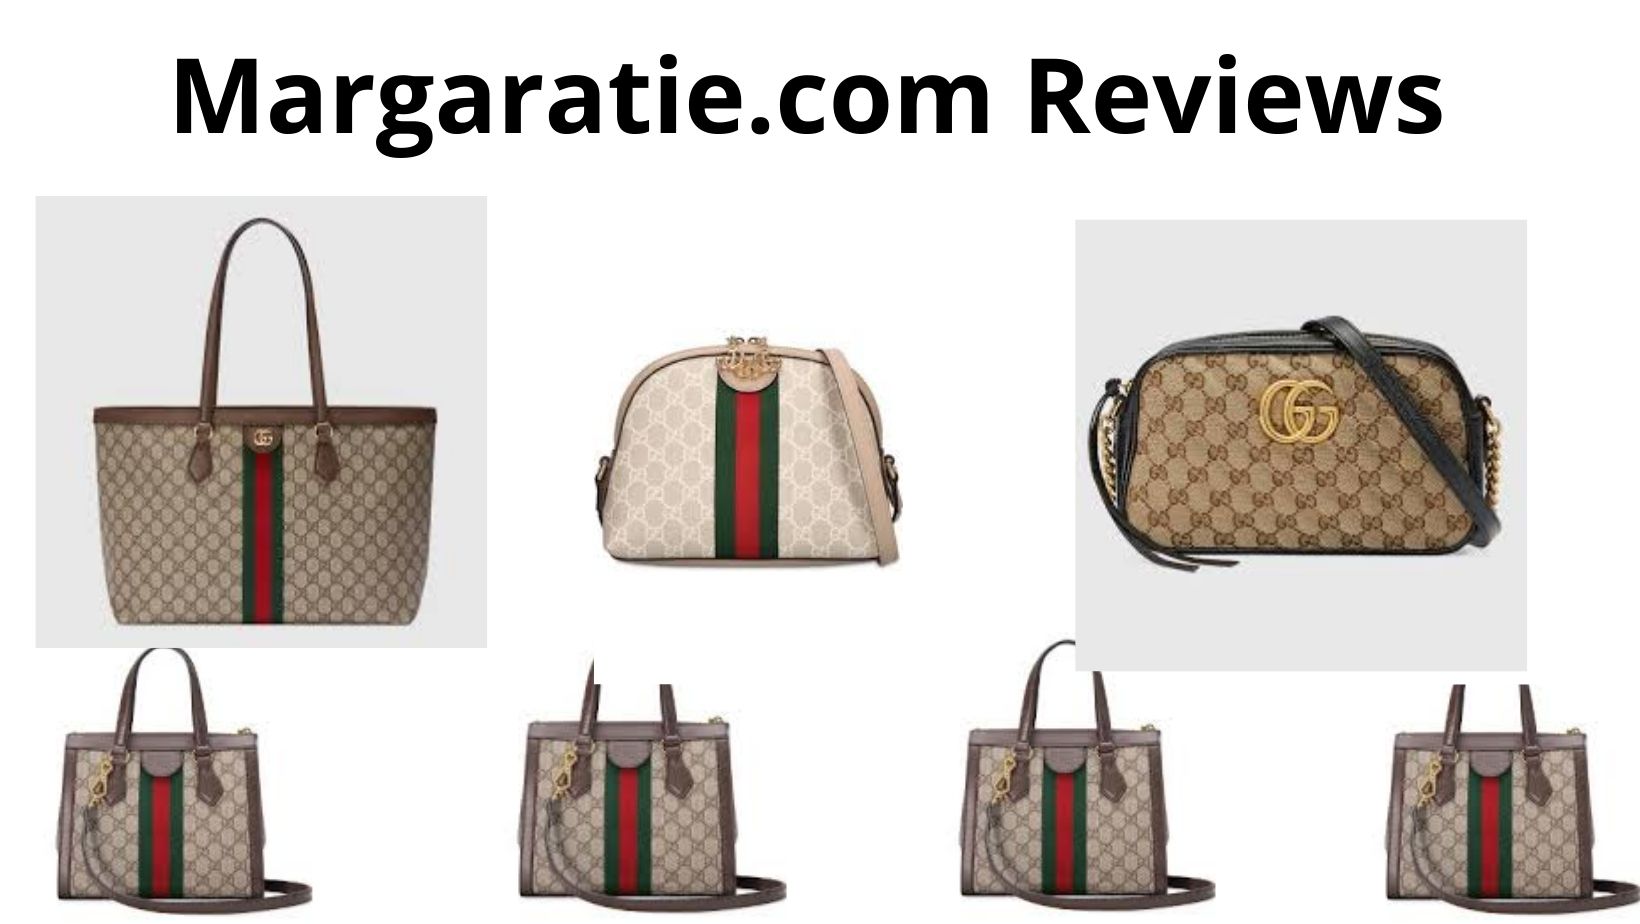 Margaratie.com Reviews